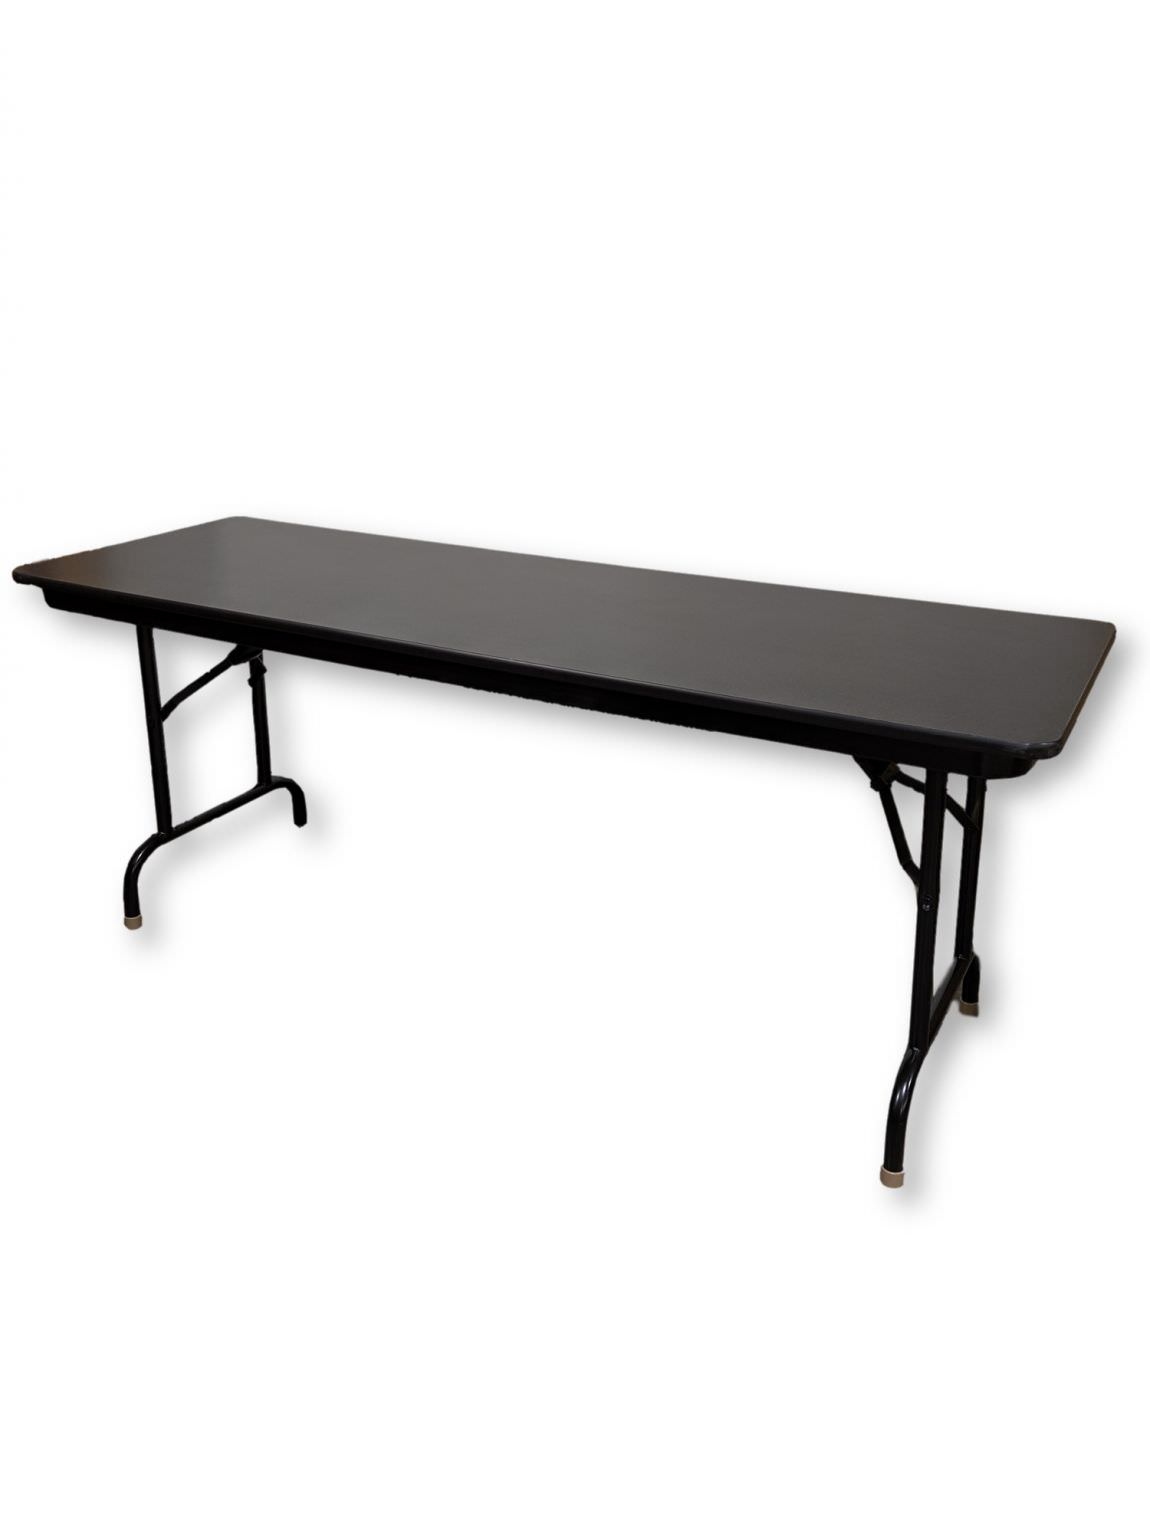 Black Laminate Folding Table – 72x24